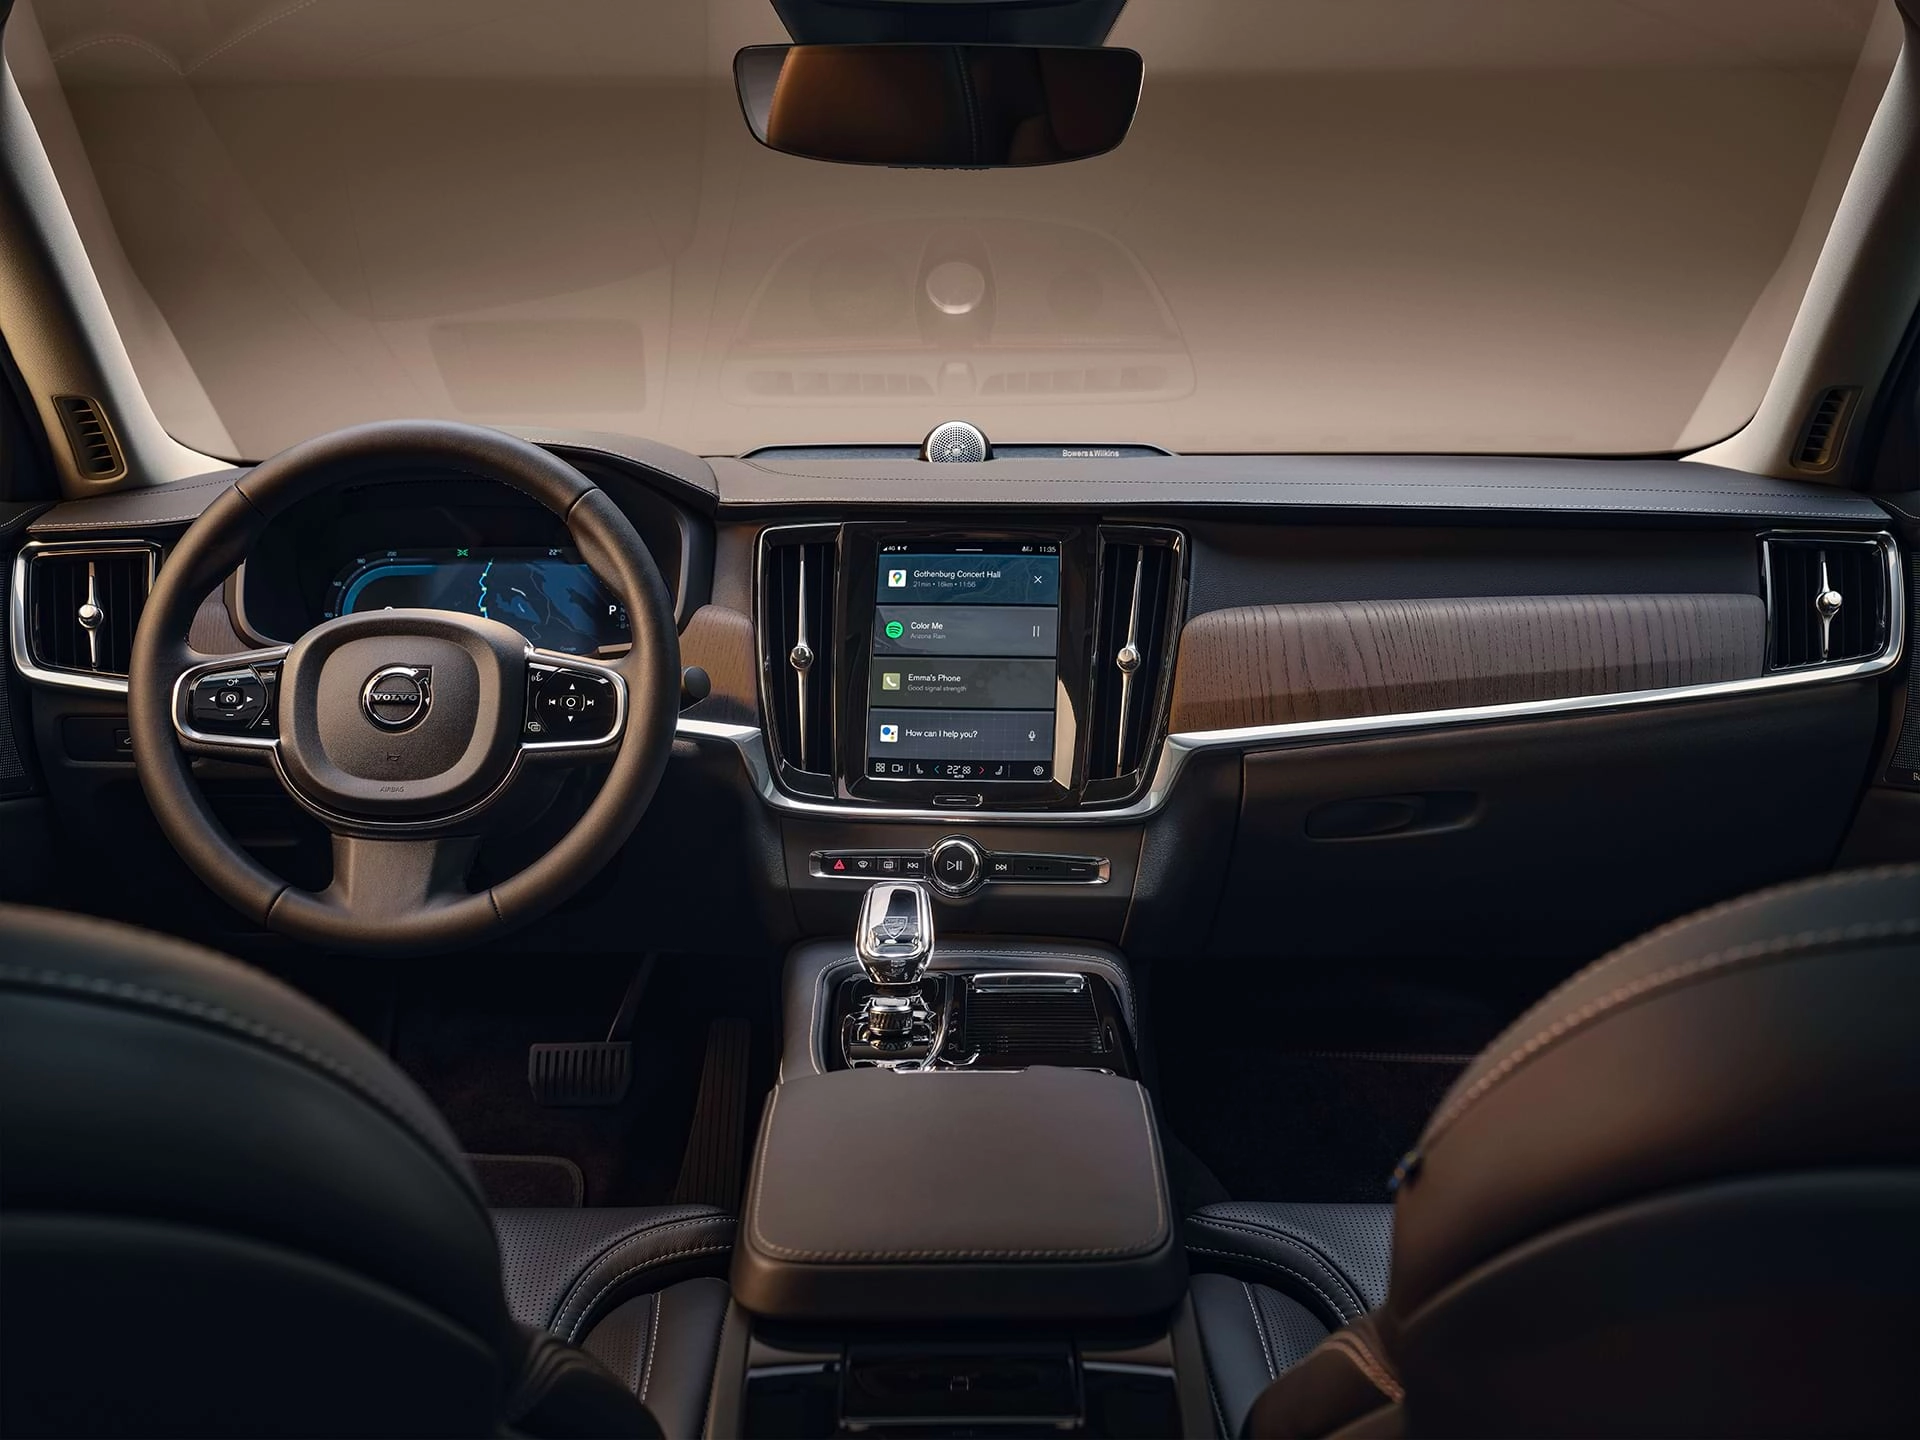 El tablero, la pantalla central, la palanca de cambios, la pantalla del conductor y el volante de un automóvil sedán Volvo.